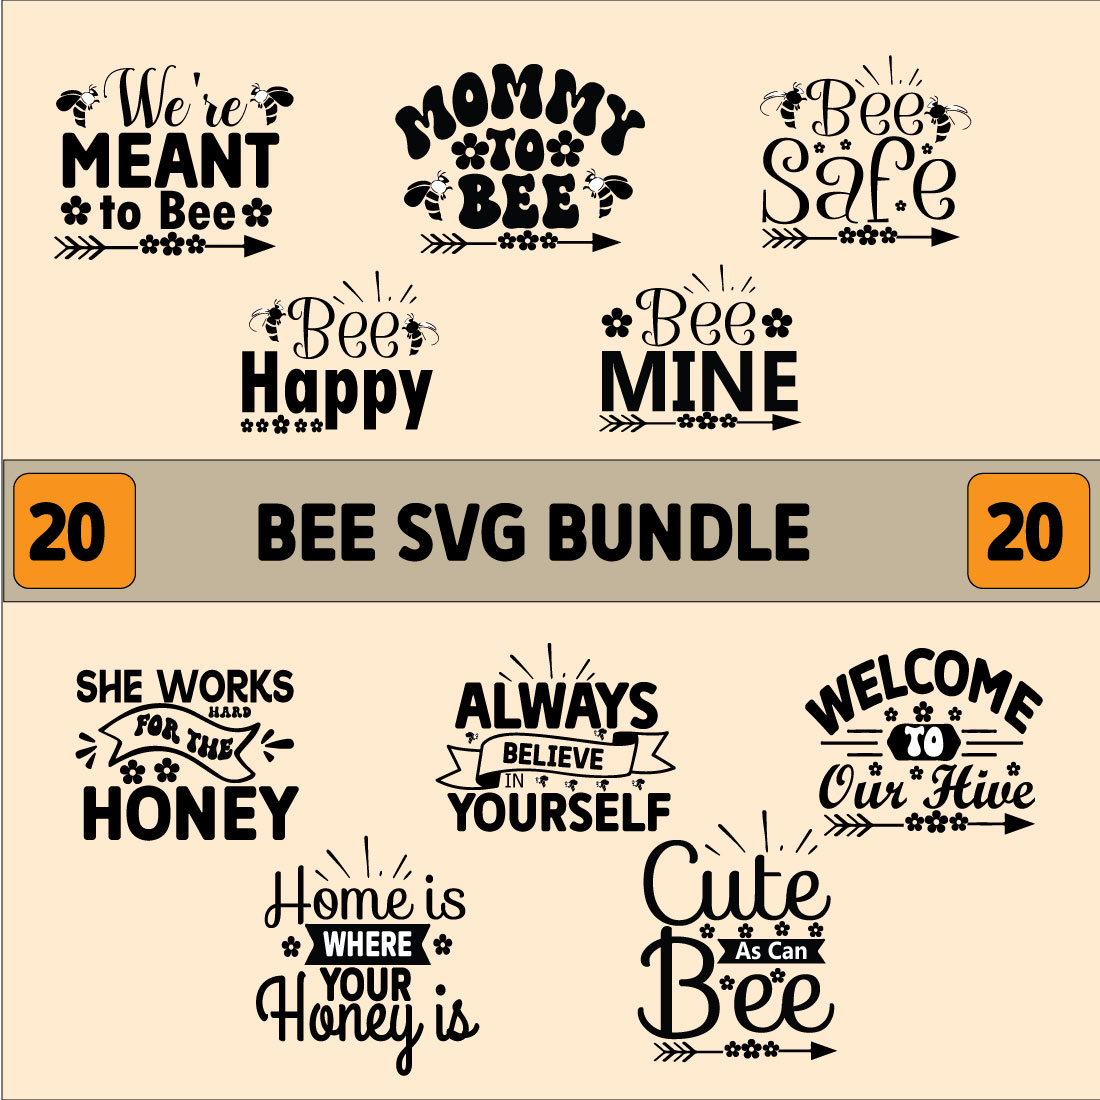 Bee SVG Design Bundle cover image.